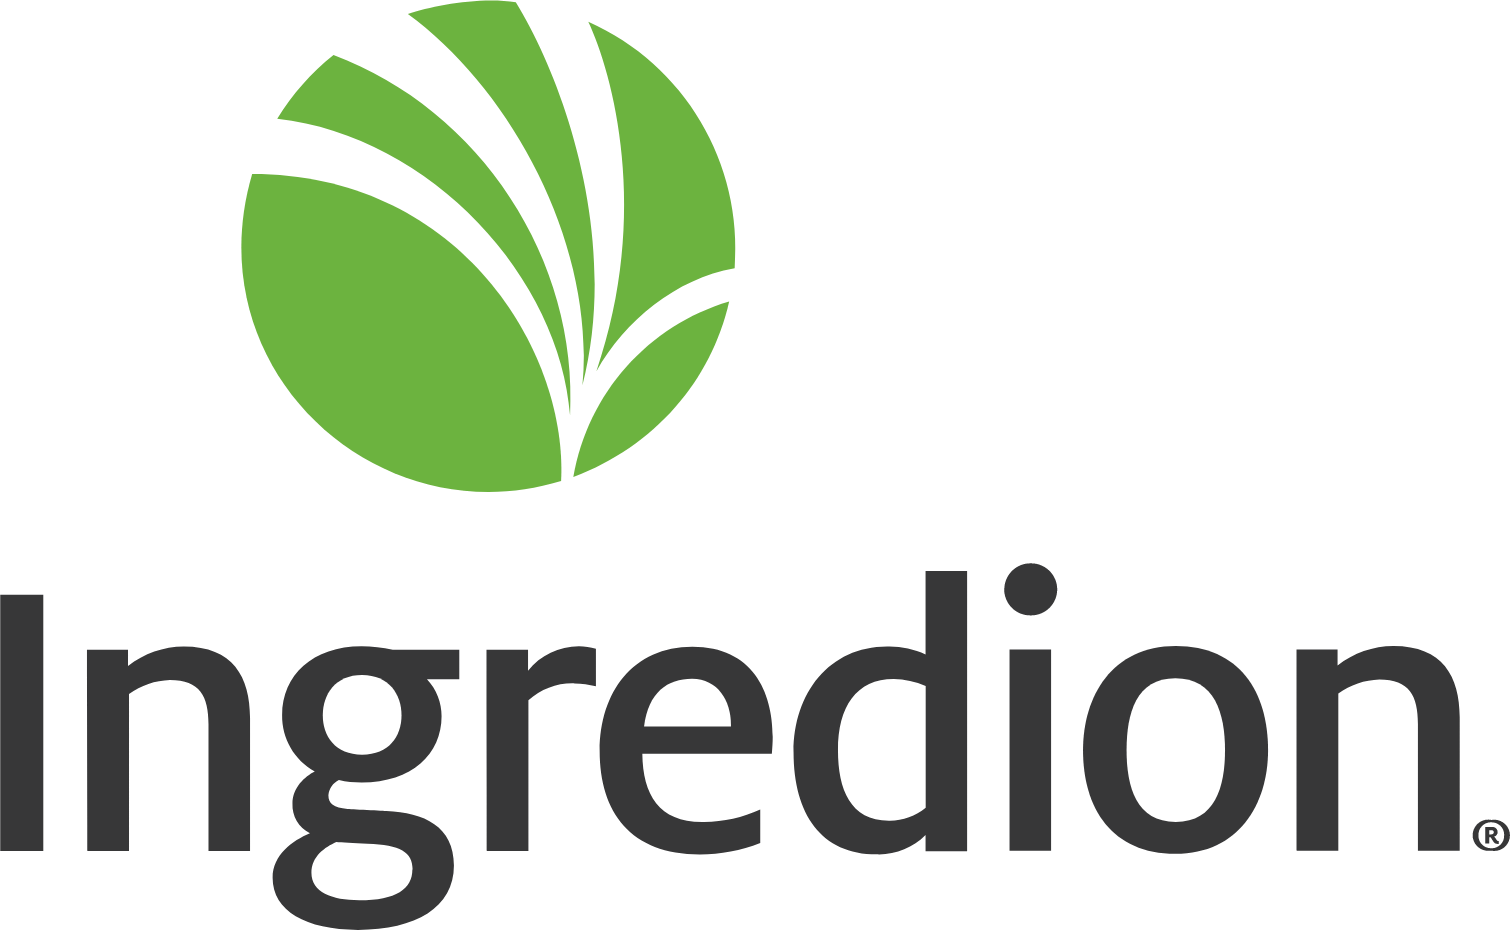 Ingredion logo large (transparent PNG)